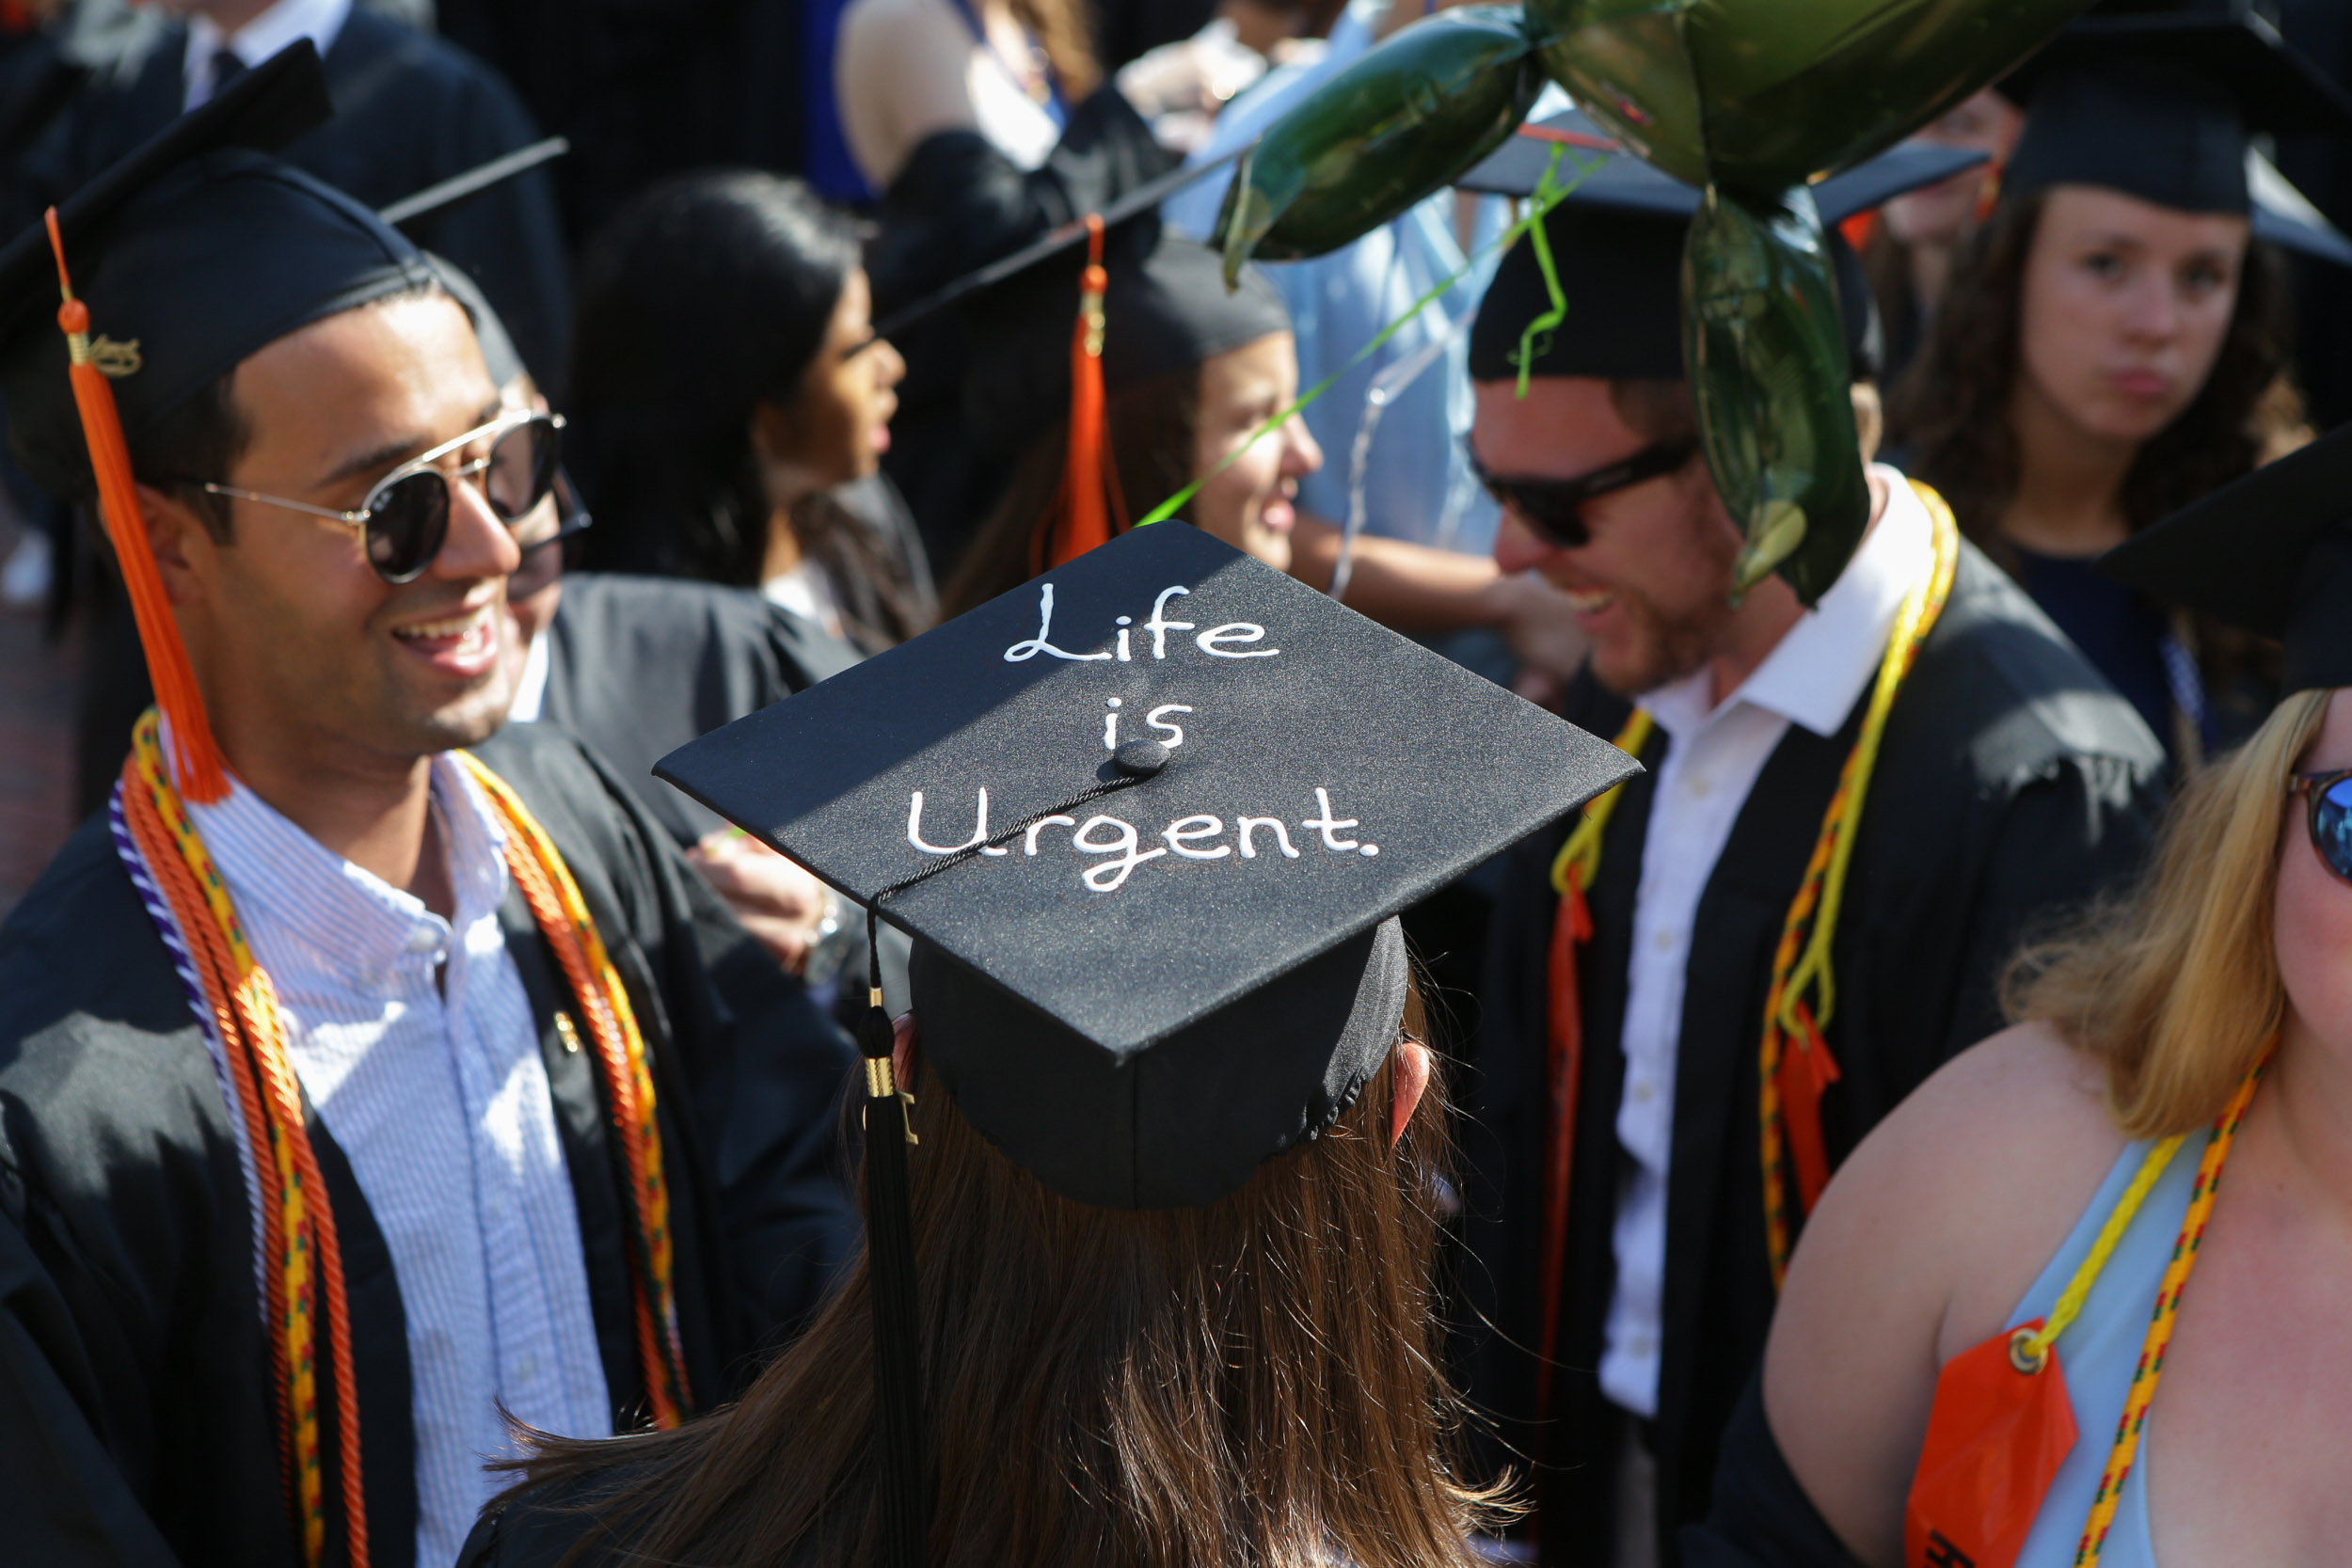 graduation cap reads Life is urgent